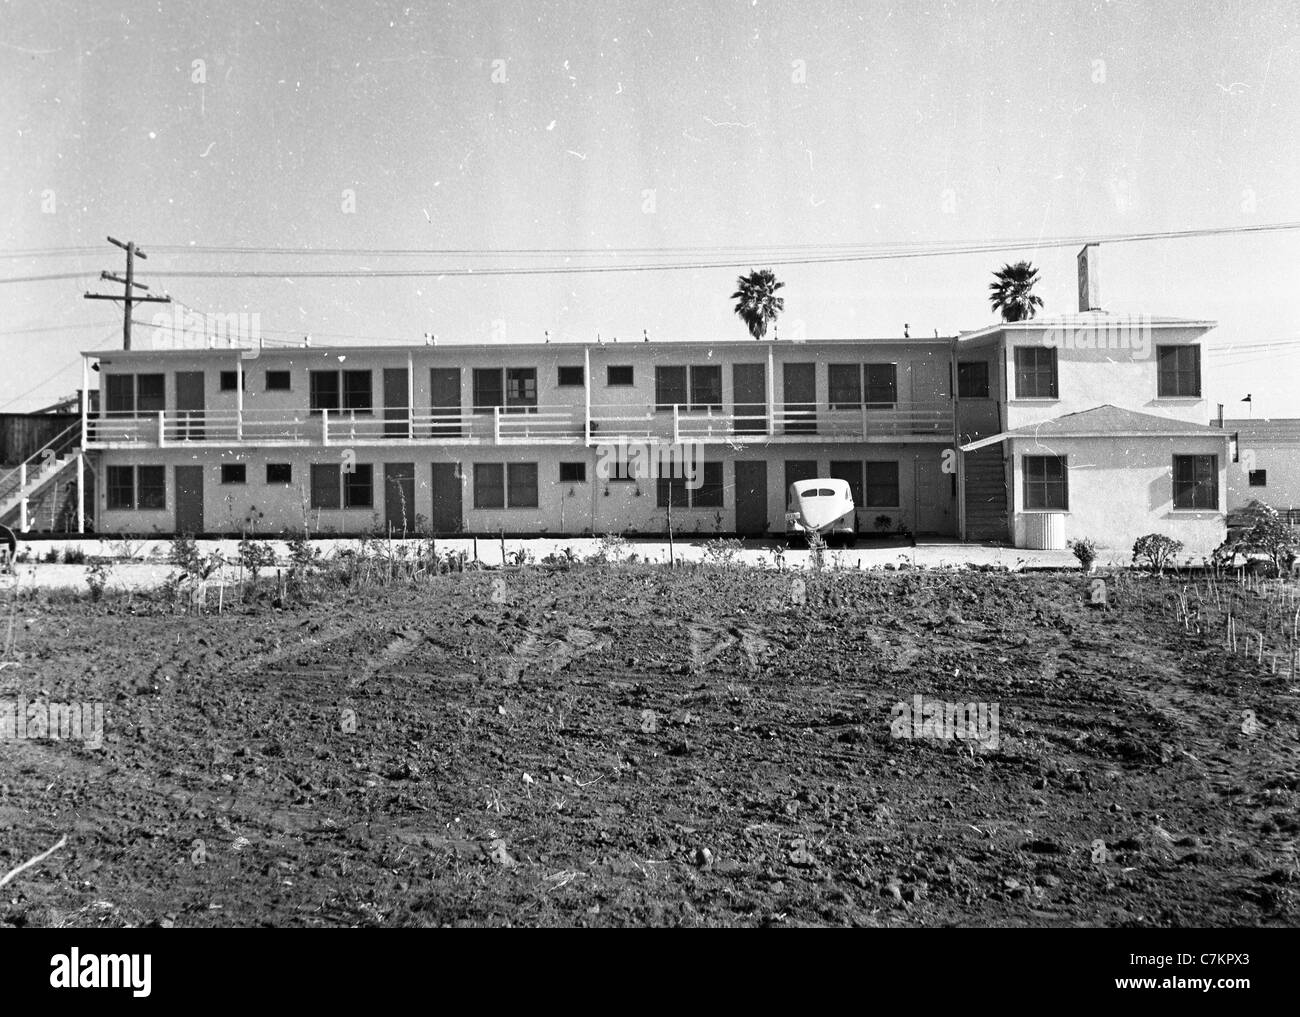 am Straßenrand Motel zweistöckigen 1930er Jahre südwestlichen Vereinigten Staaten Architektur Reisen Unterkunft hotel Stockfoto